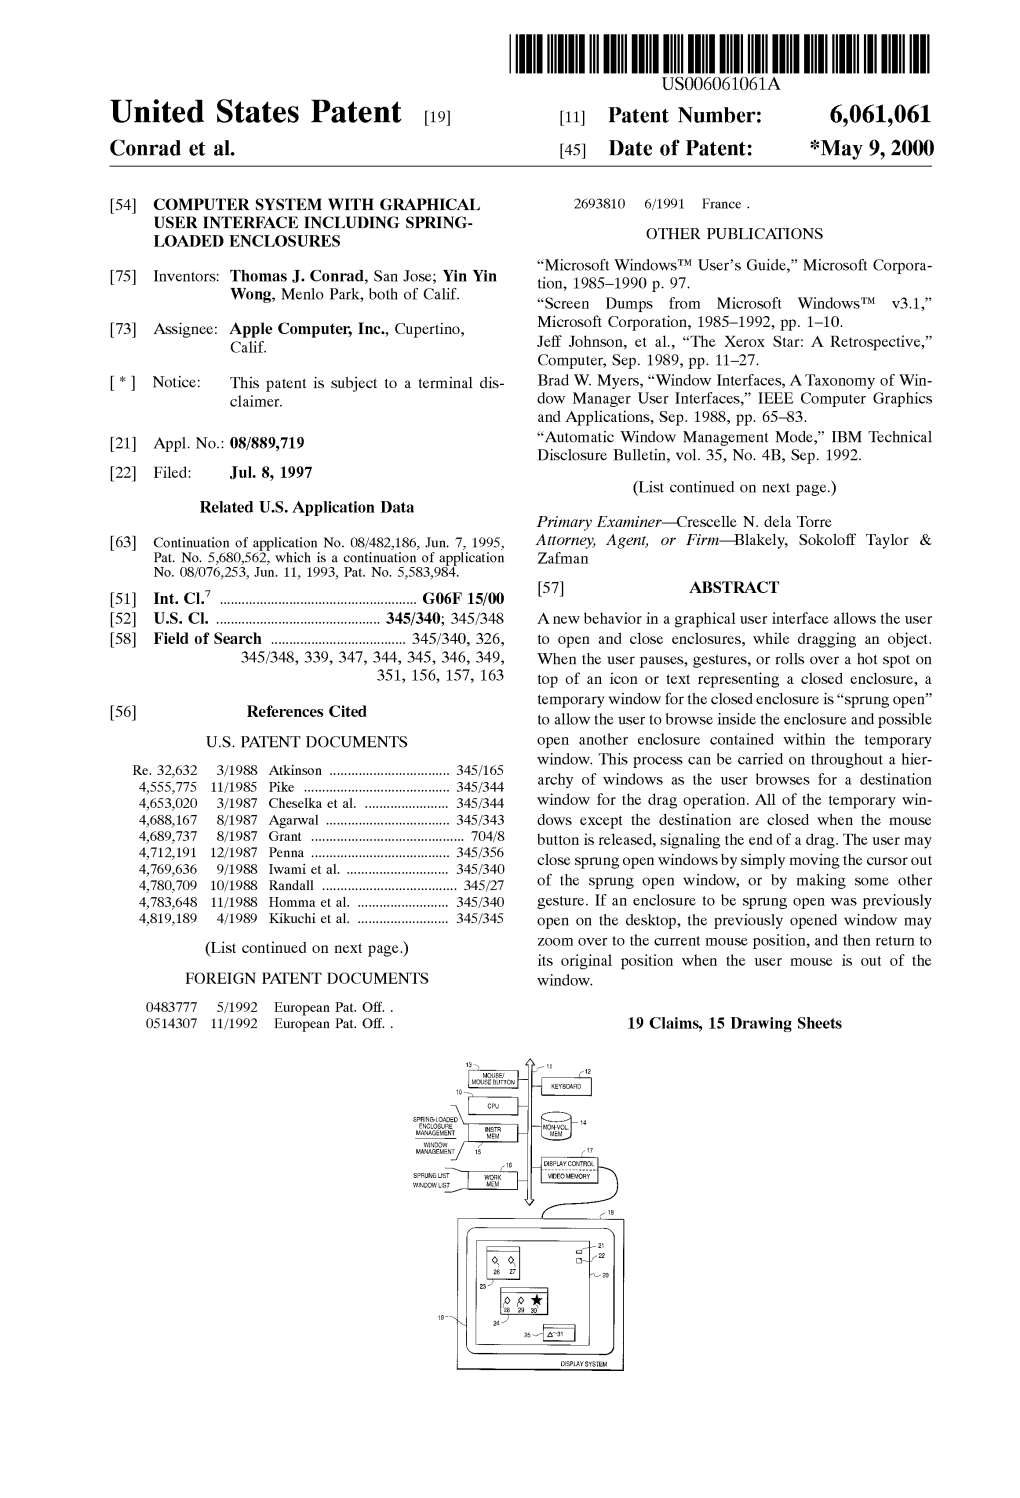 United States Patent (19) 11 Patent Number: 6,061,061 Conrad Et Al